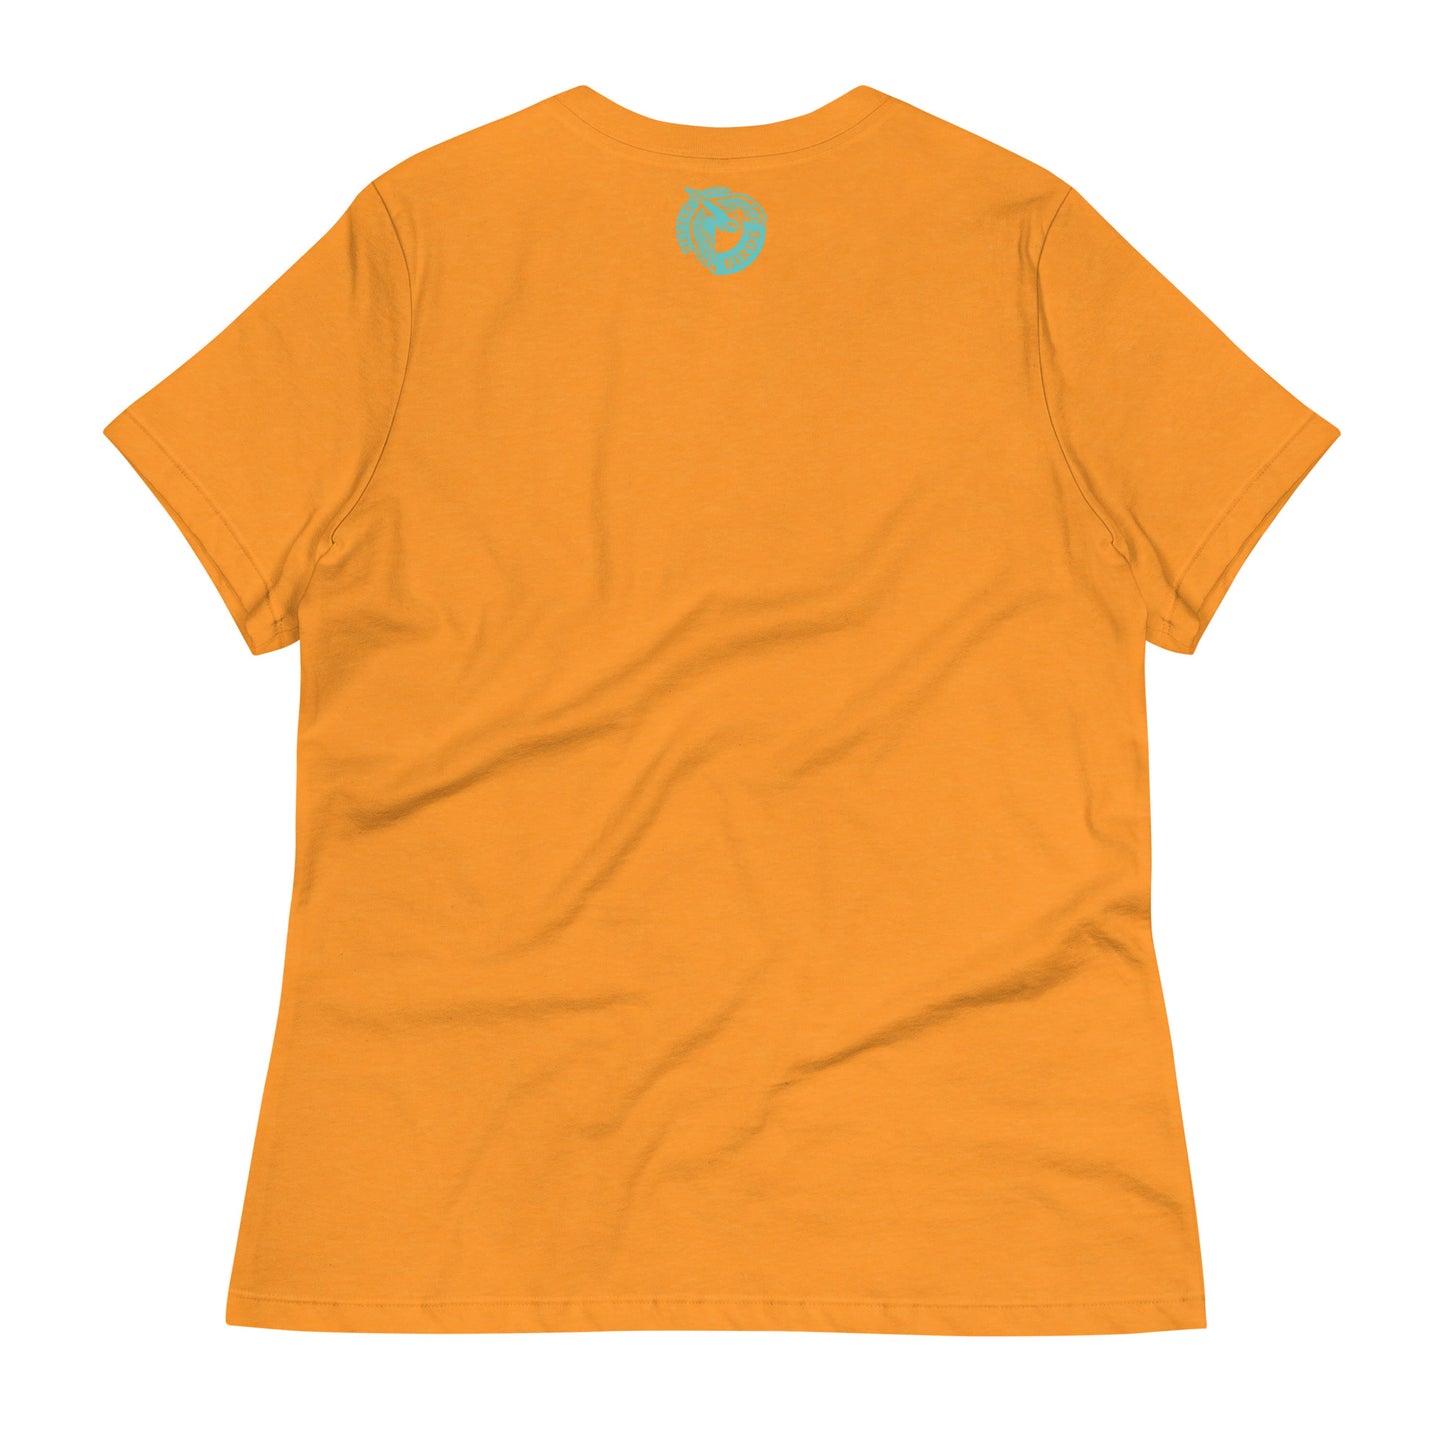 Yellow Warbler Women's Relaxed T-Shirt